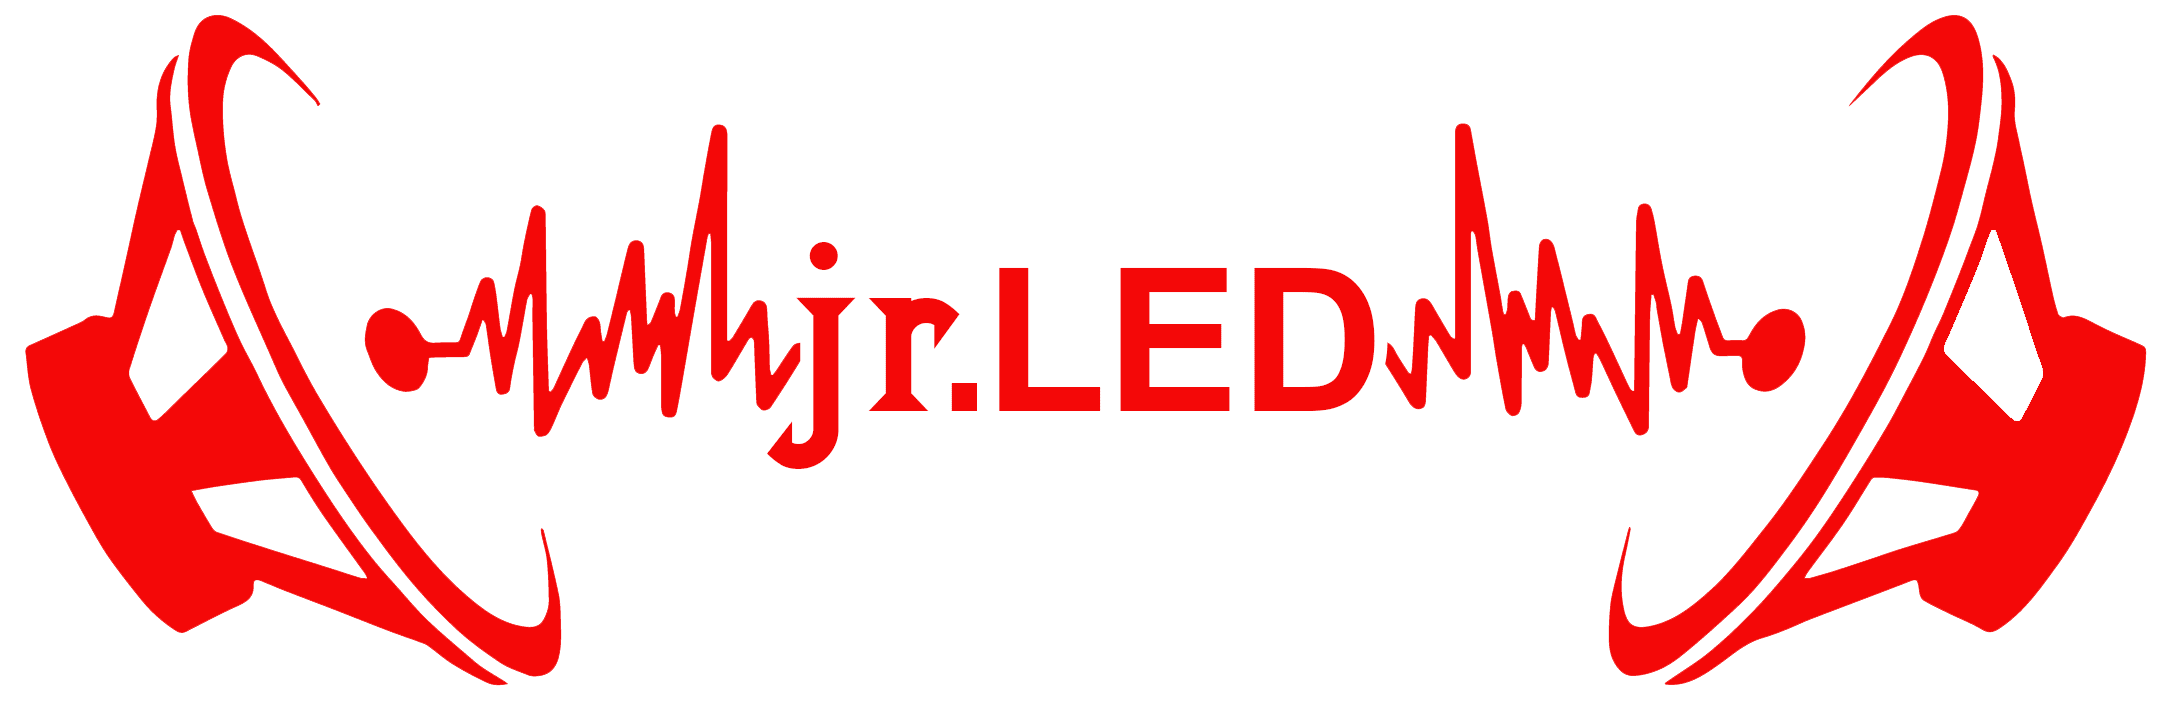 Jr. Led & Car Audio